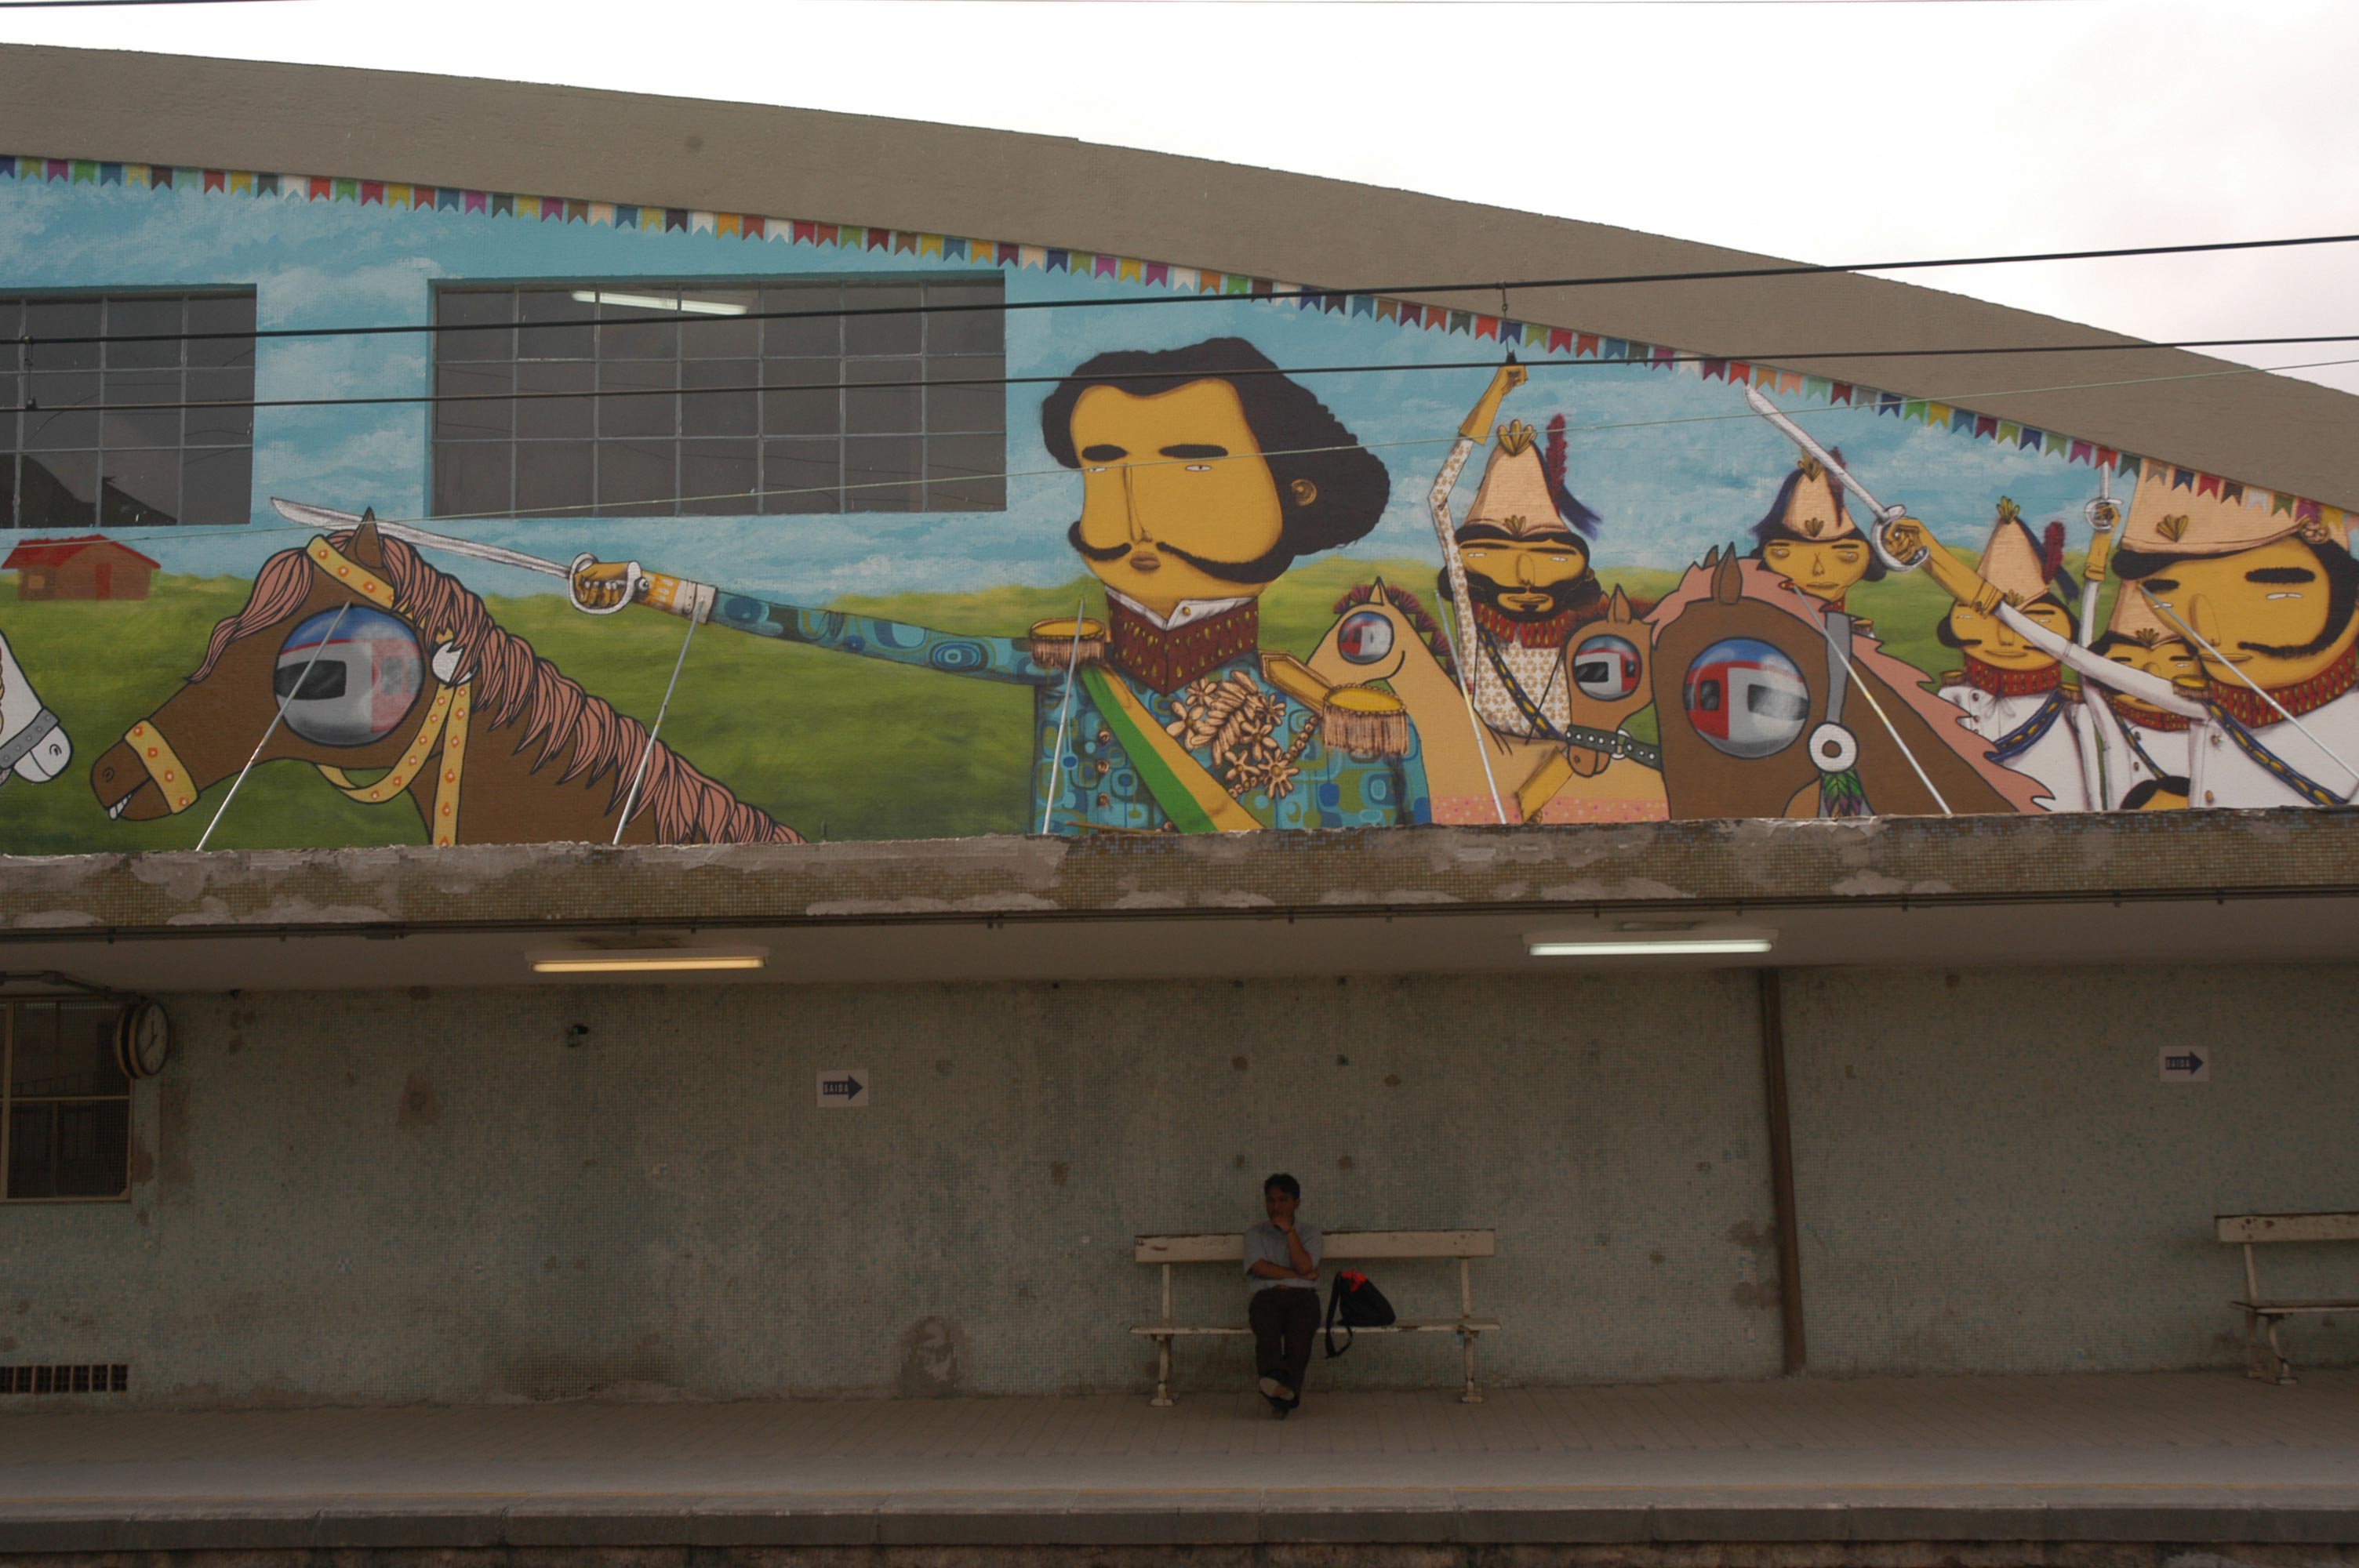 TRAIN STATION IPIRANGA, COLLABORATION OSGEMEOS, ISE AND NINA PANDOLFO – GRAFFITI PROJECT